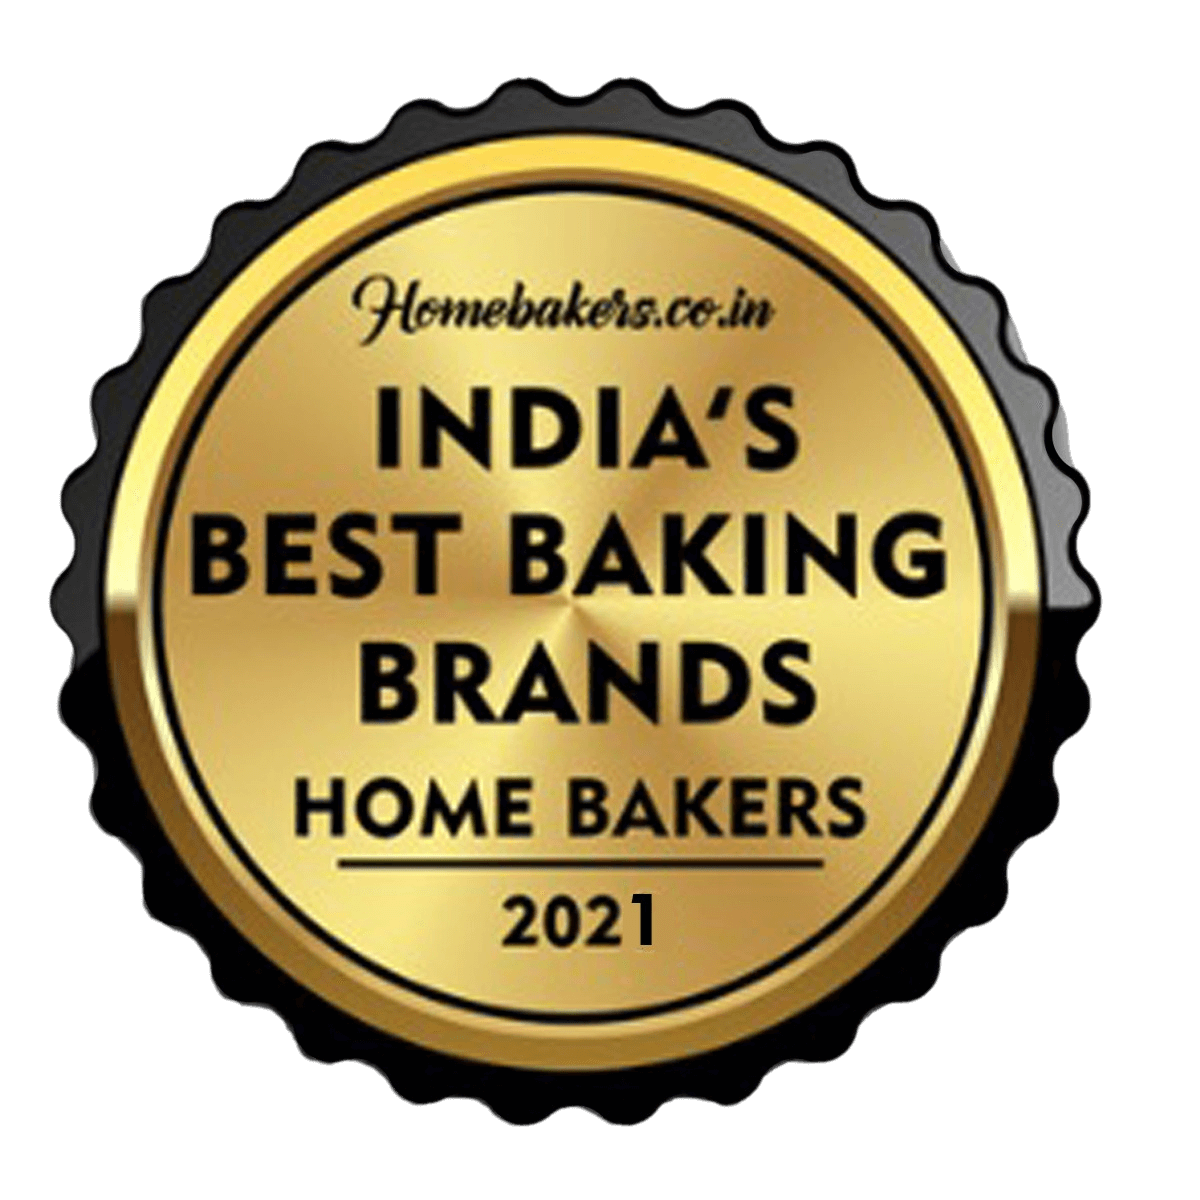 India's Best Baking Brands 2021